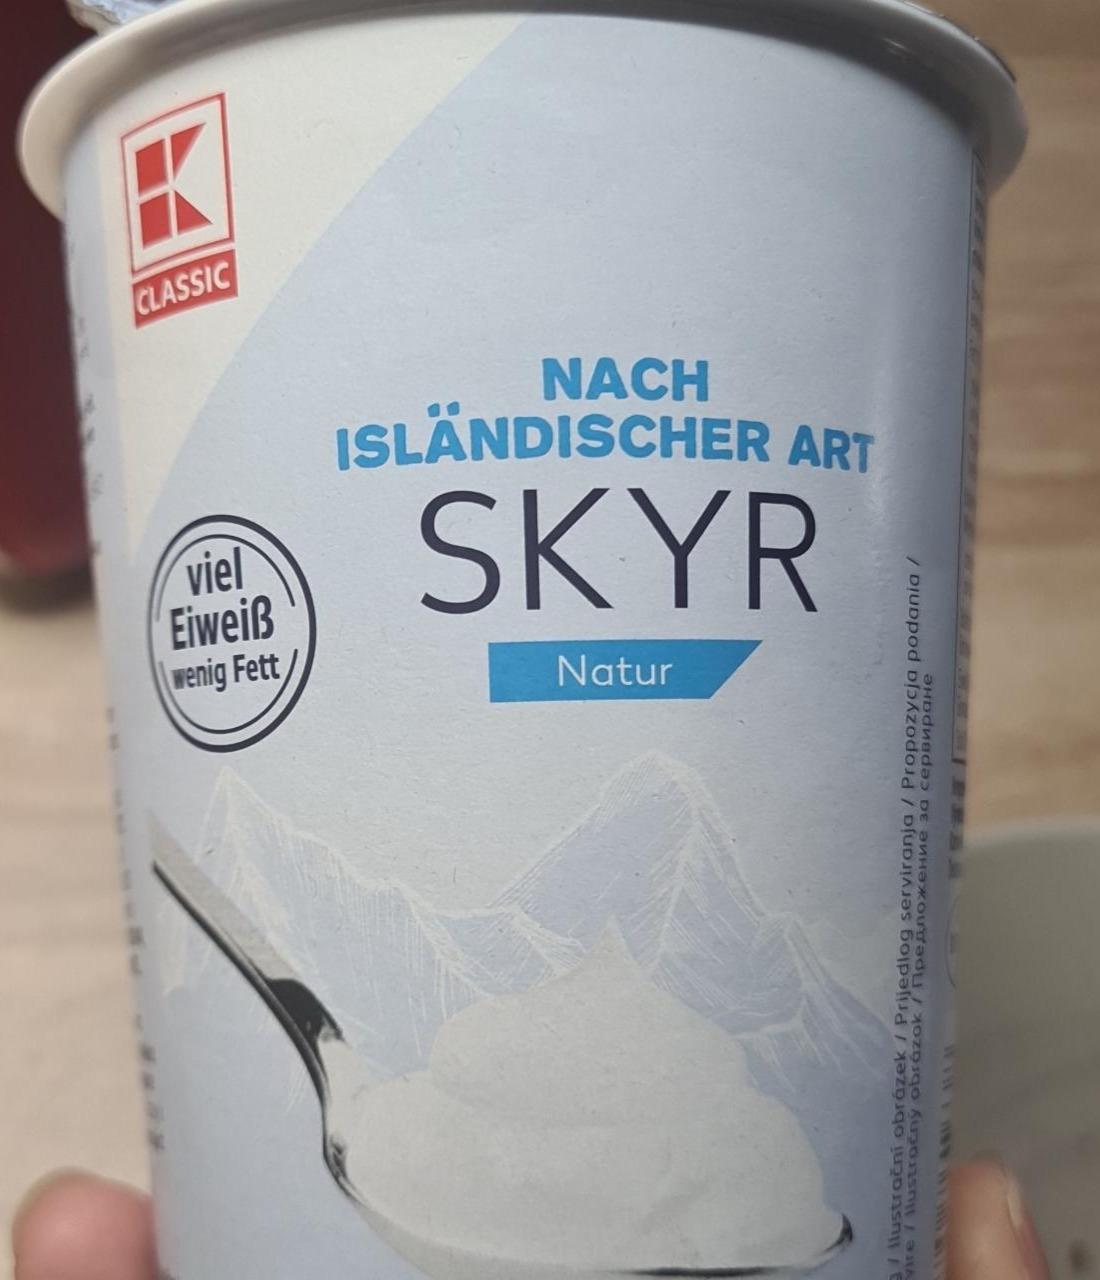 Fotografie - Skyr nach Isländischer Art Natur K-Classic